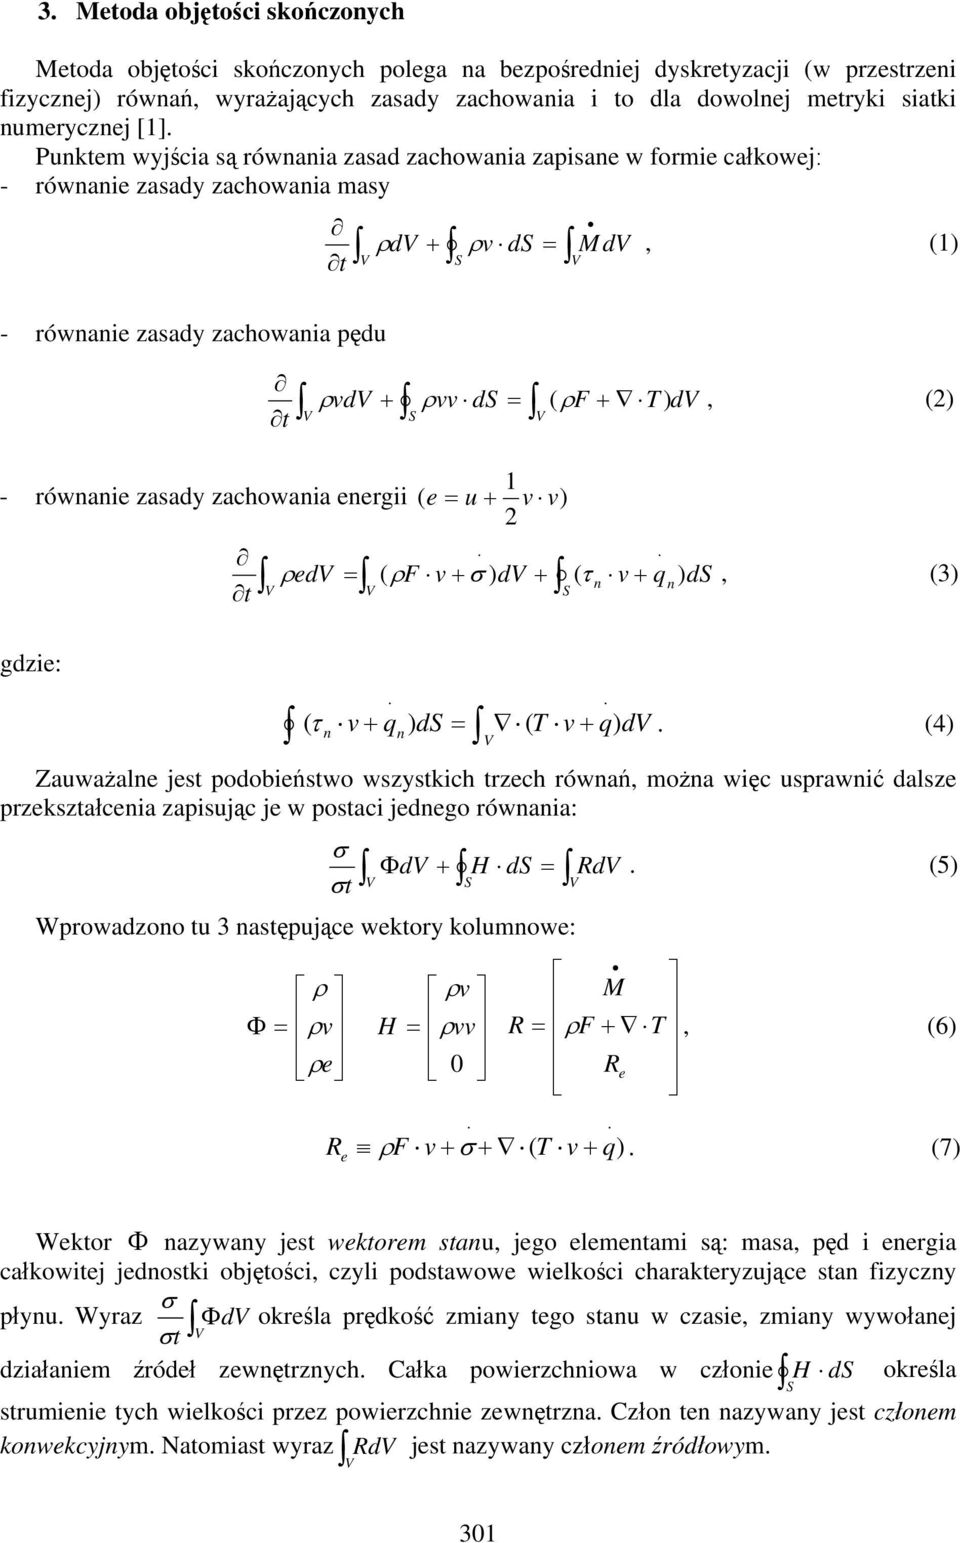 Punktem wyjścia są równania zasad zachowania zapisane w formie całkowej: - równanie zasady zachowania masy t - równanie zasady zachowania pędu t ρ d + ρv d = Md, (1) ρ vd + ρvv d = (ρf + T ) d, (2) 1